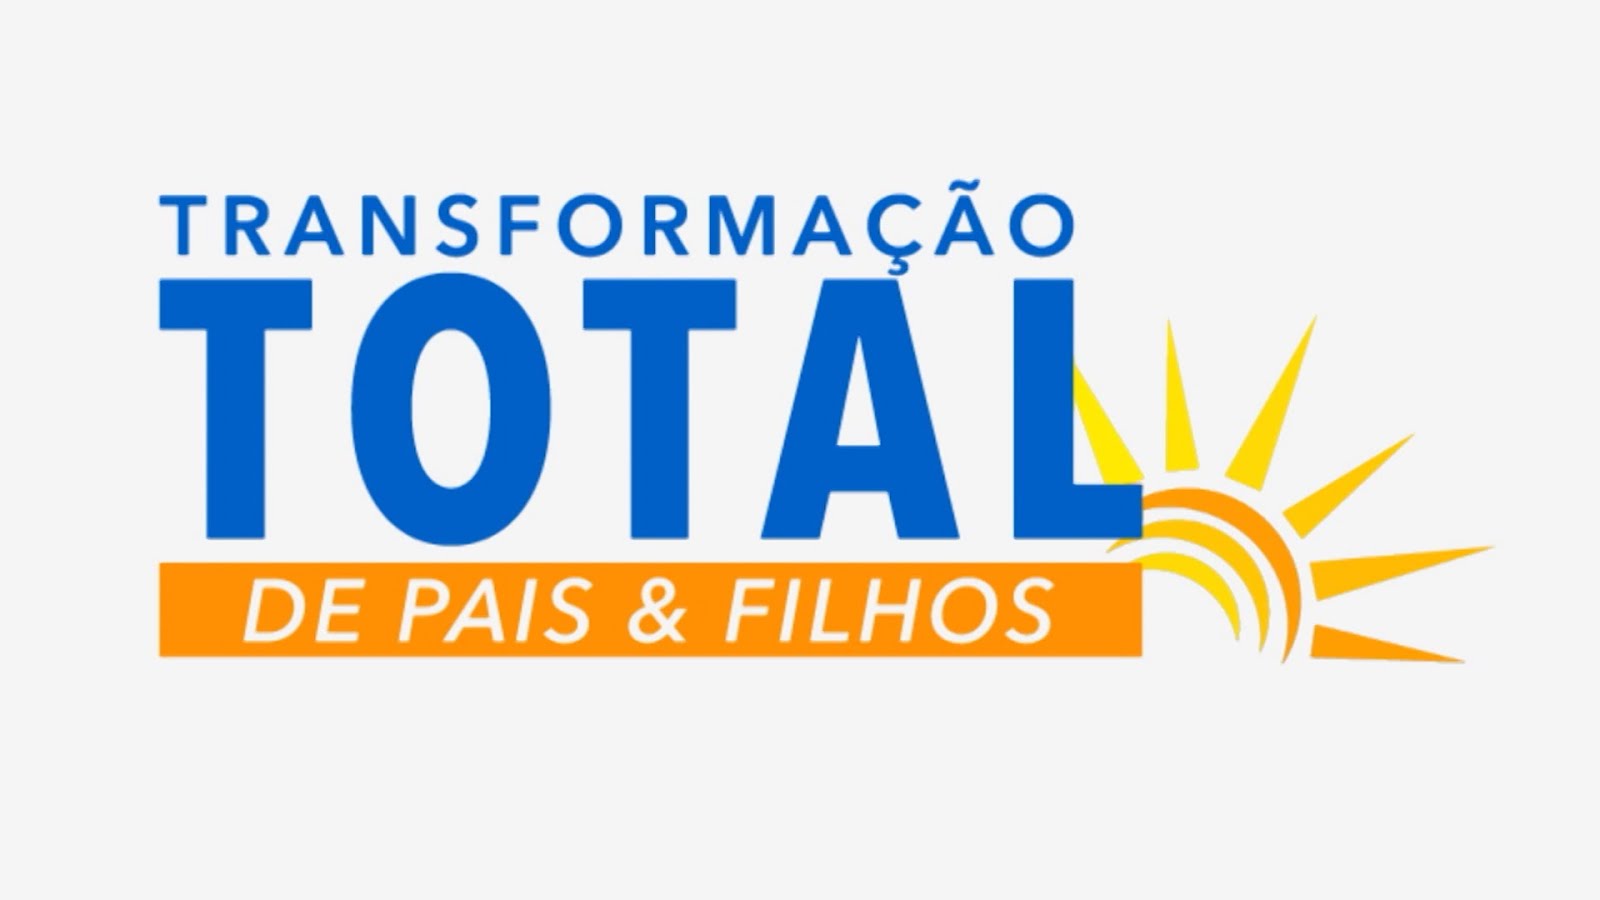 TRANSFORMA-ÇÃO TOTAL DE PAIS E FILHOS